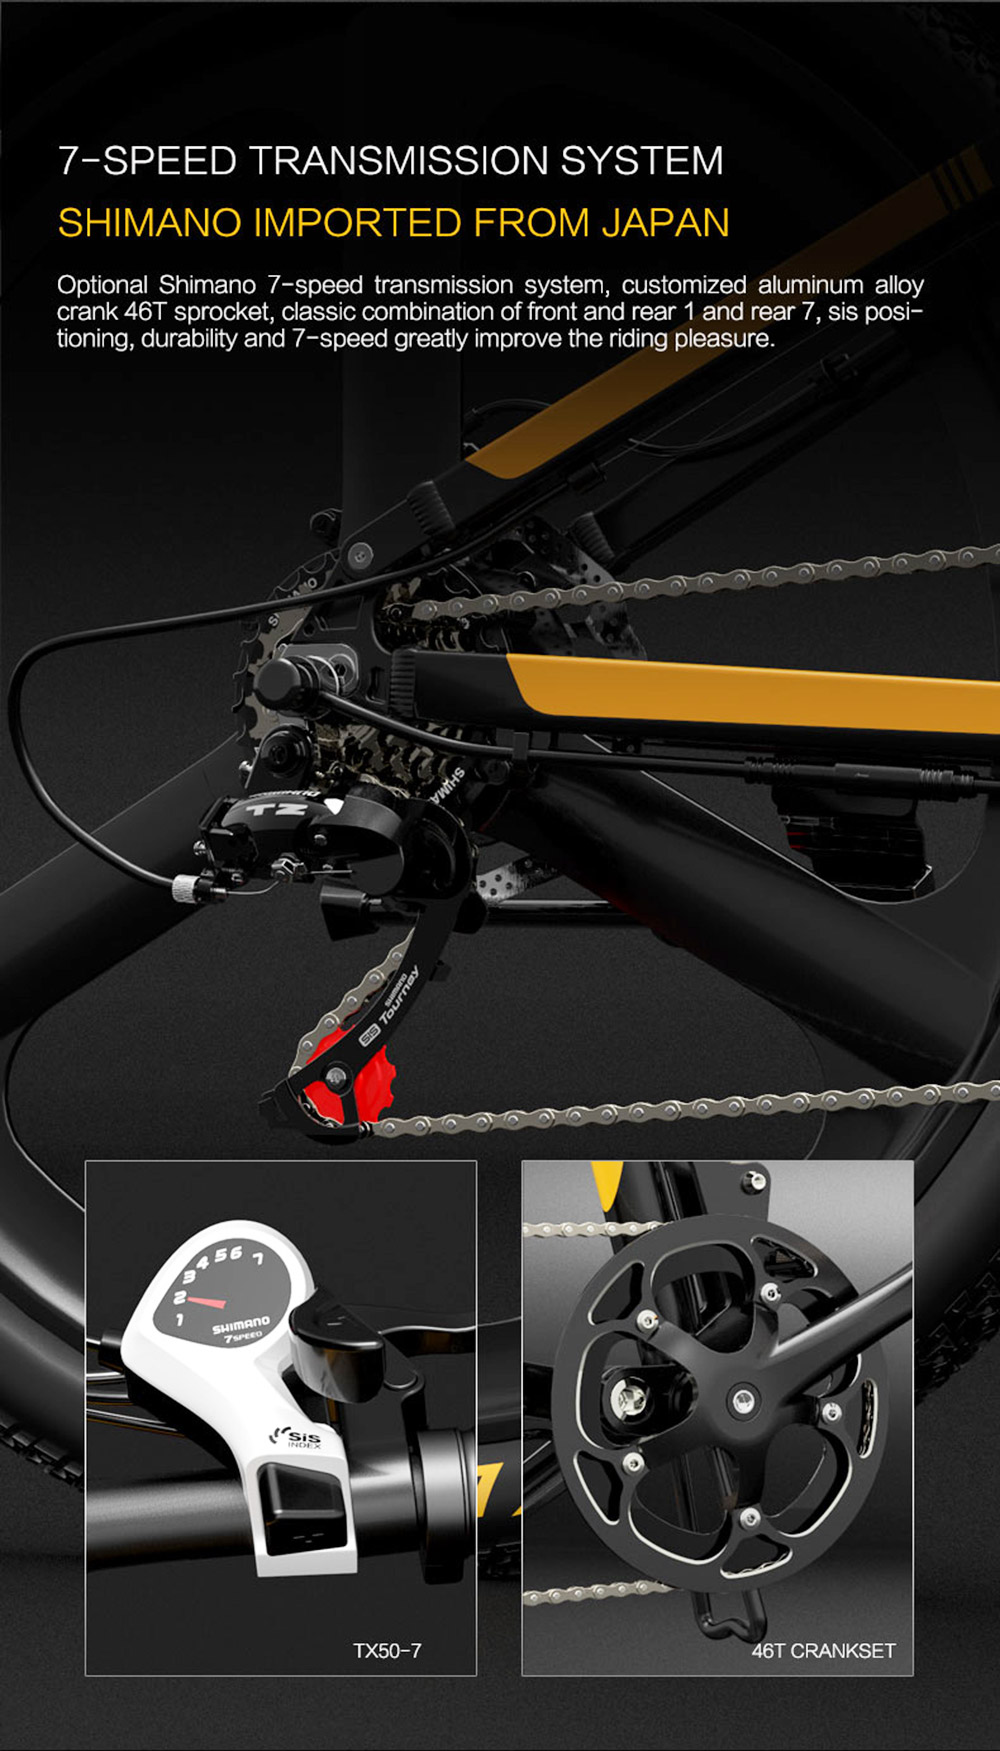 BEZIOR X500PRO faltbares elektrisches Mountainbike 500 W 30 km/h Schwarz Gelb